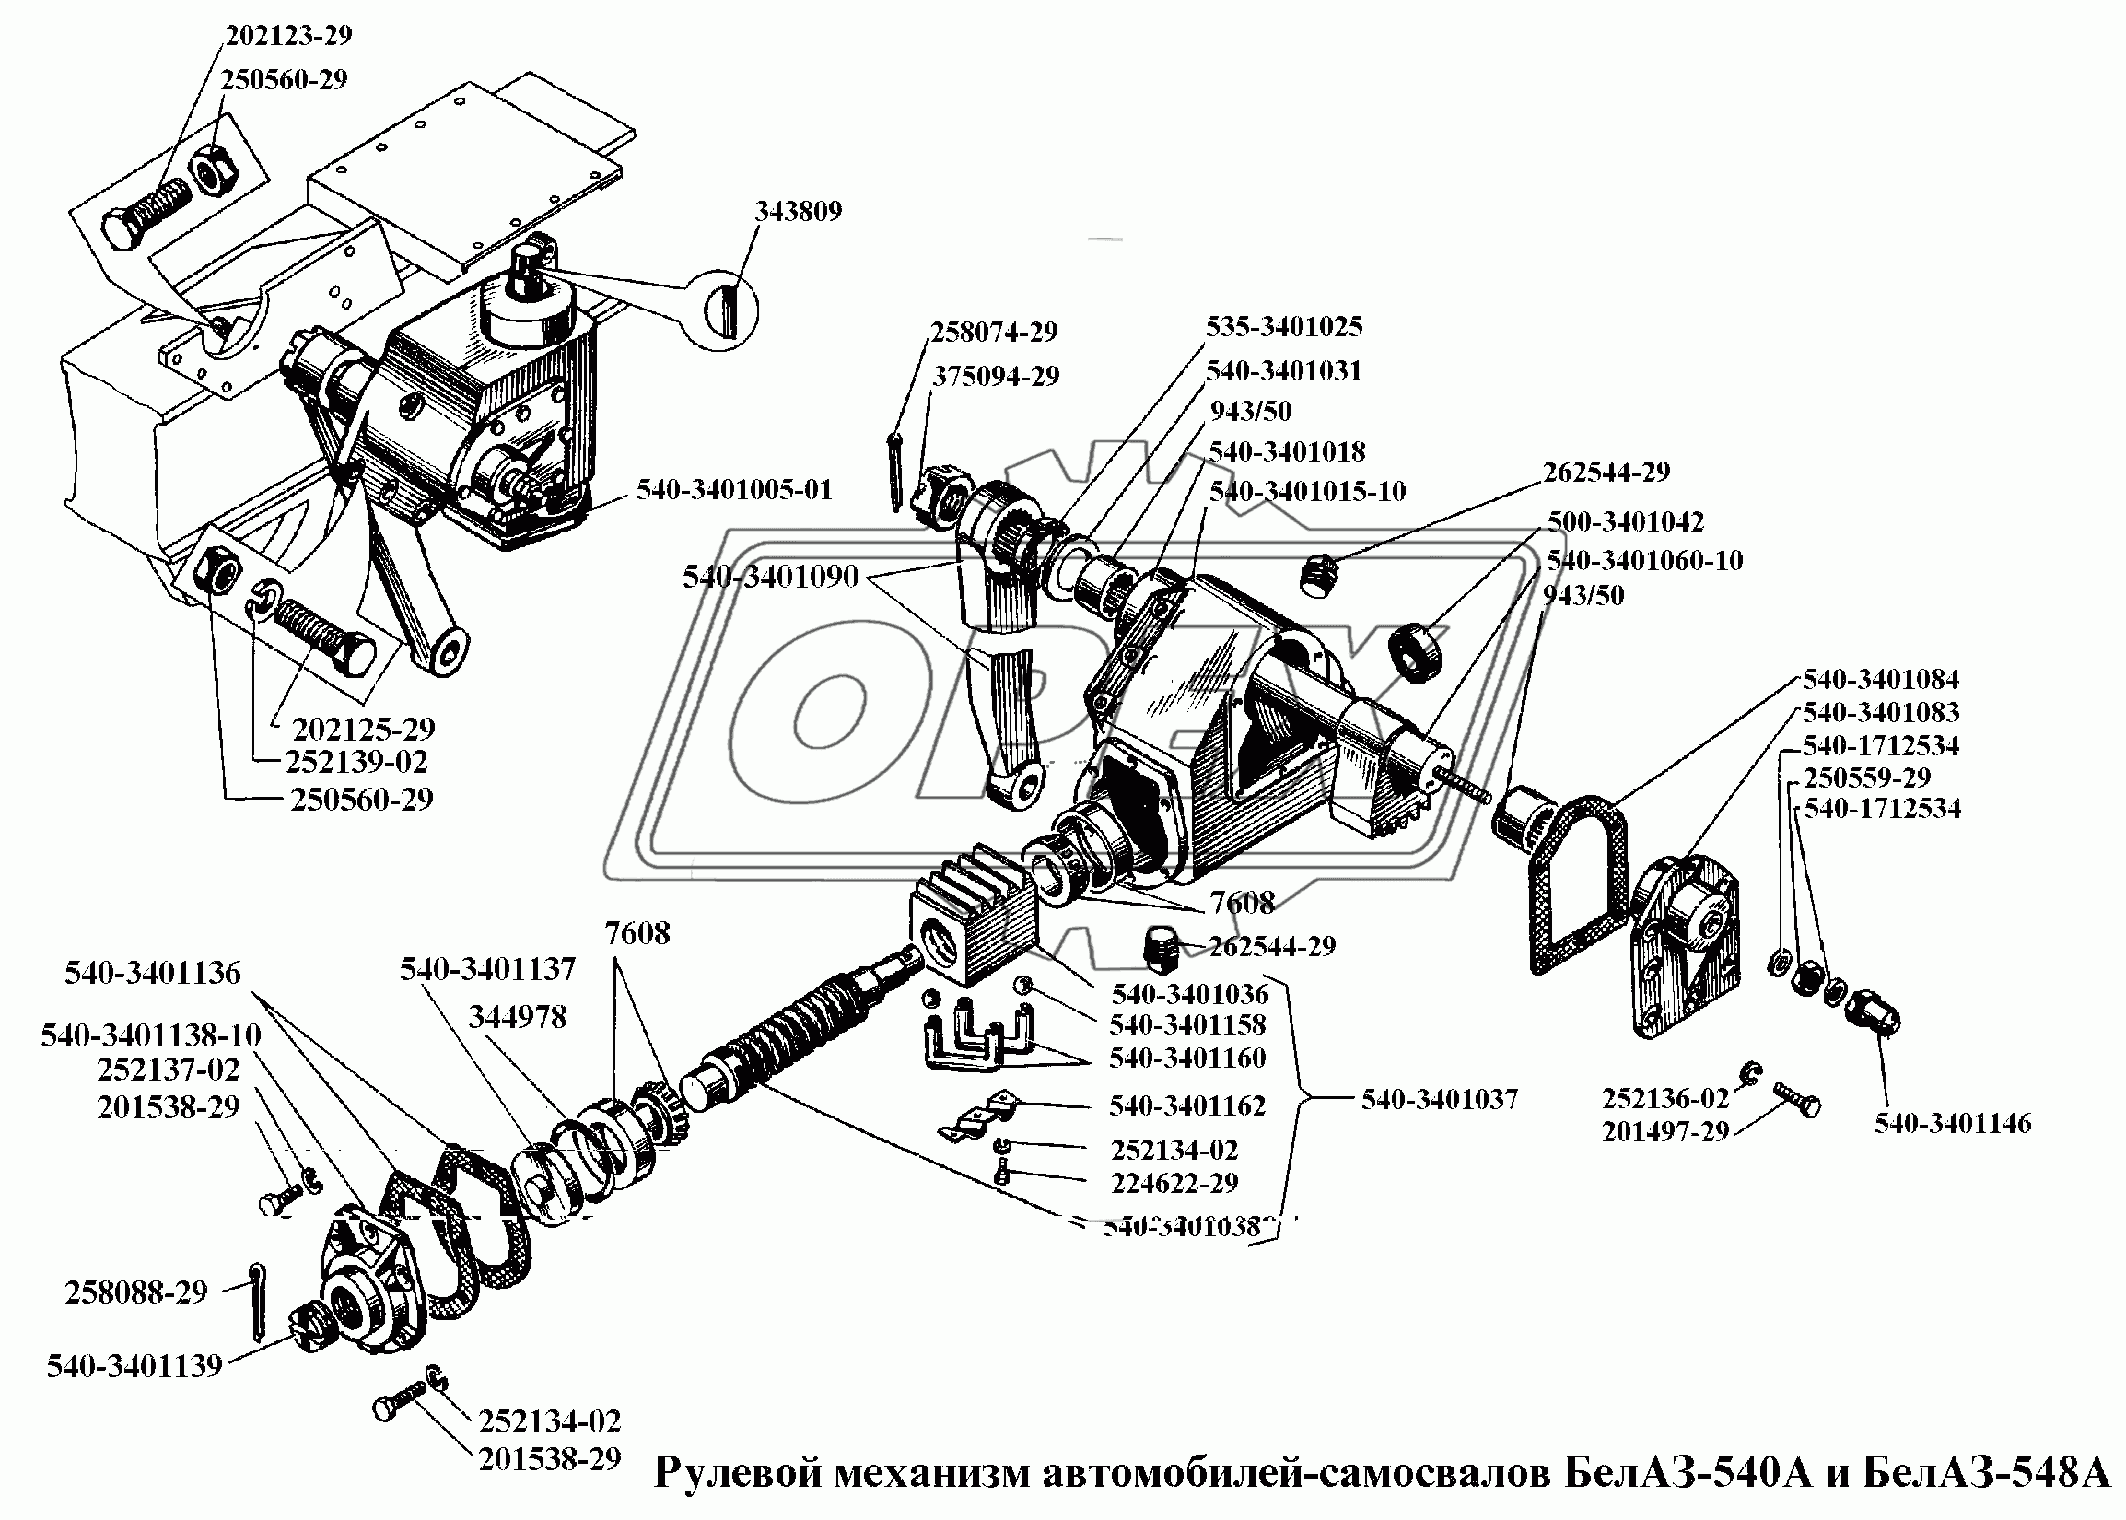 Рулевой механизм автомобилей-самосвалов БелАЗ-540А и БелАЗ-548А